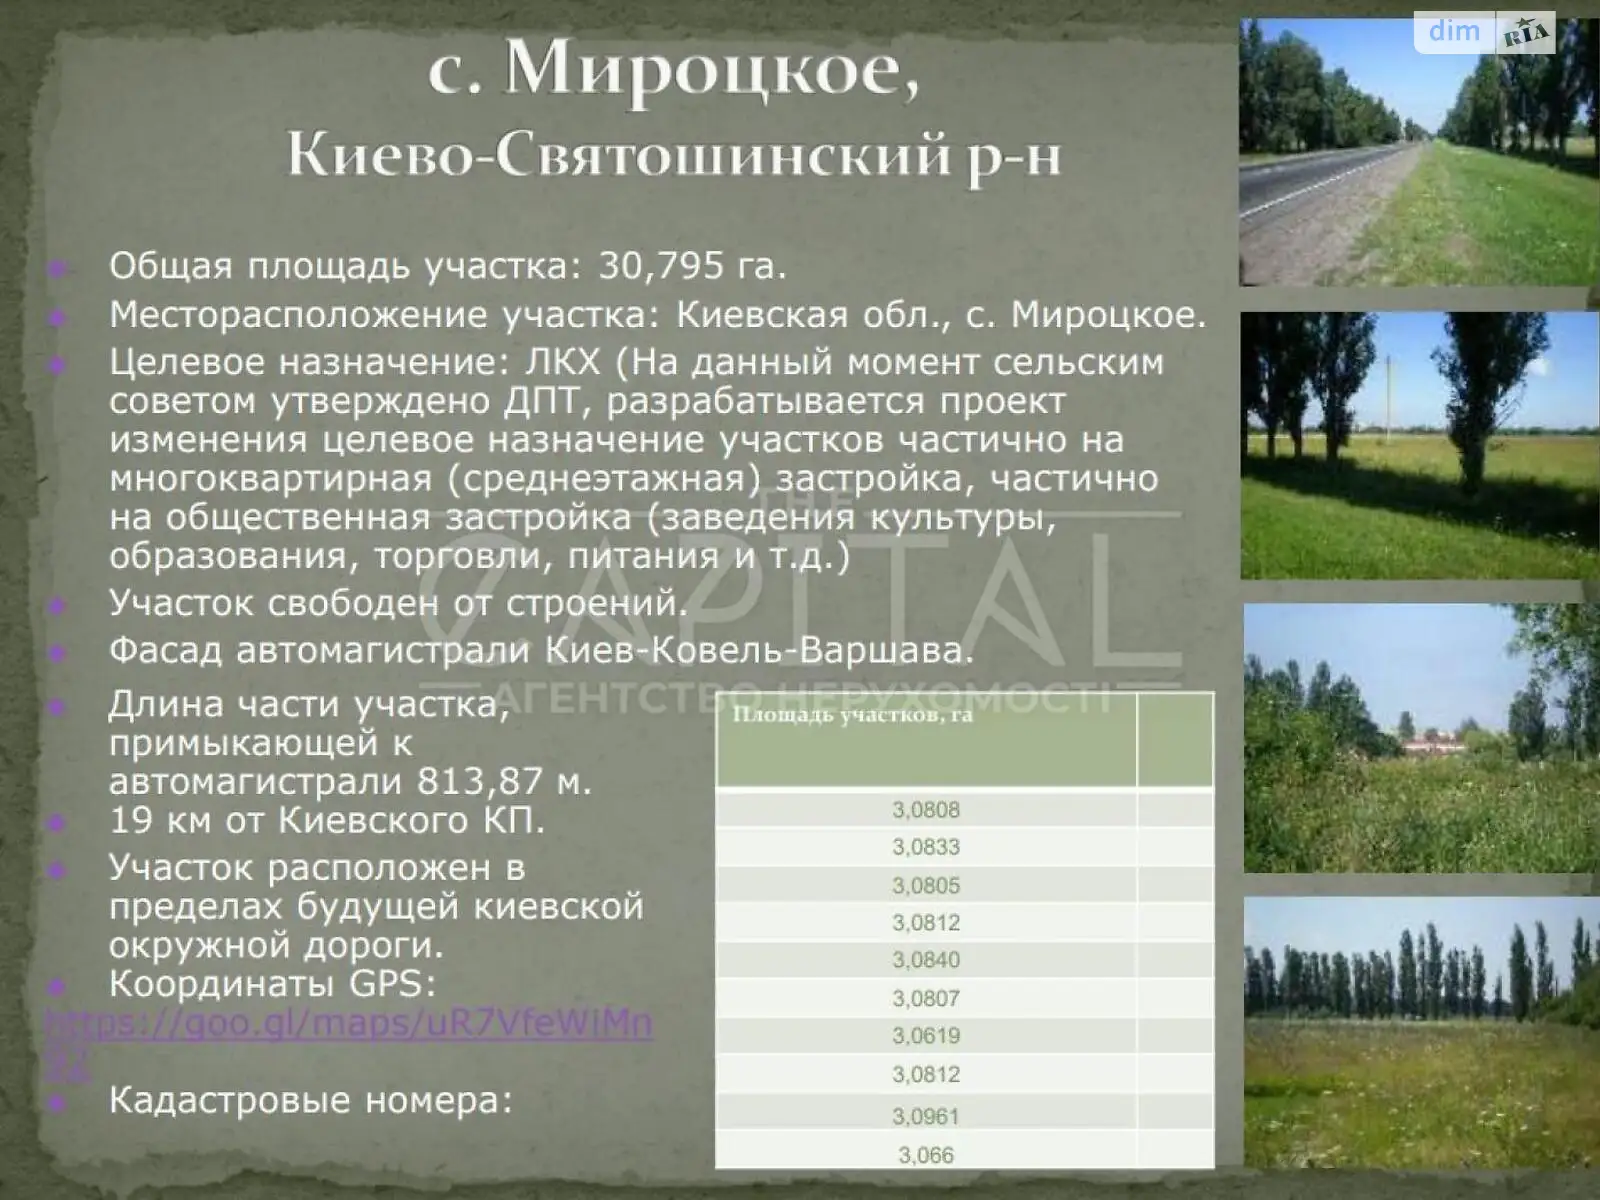 Продается земельный участок 2773 соток в Киевской области, цена: 3882200 $ - фото 1